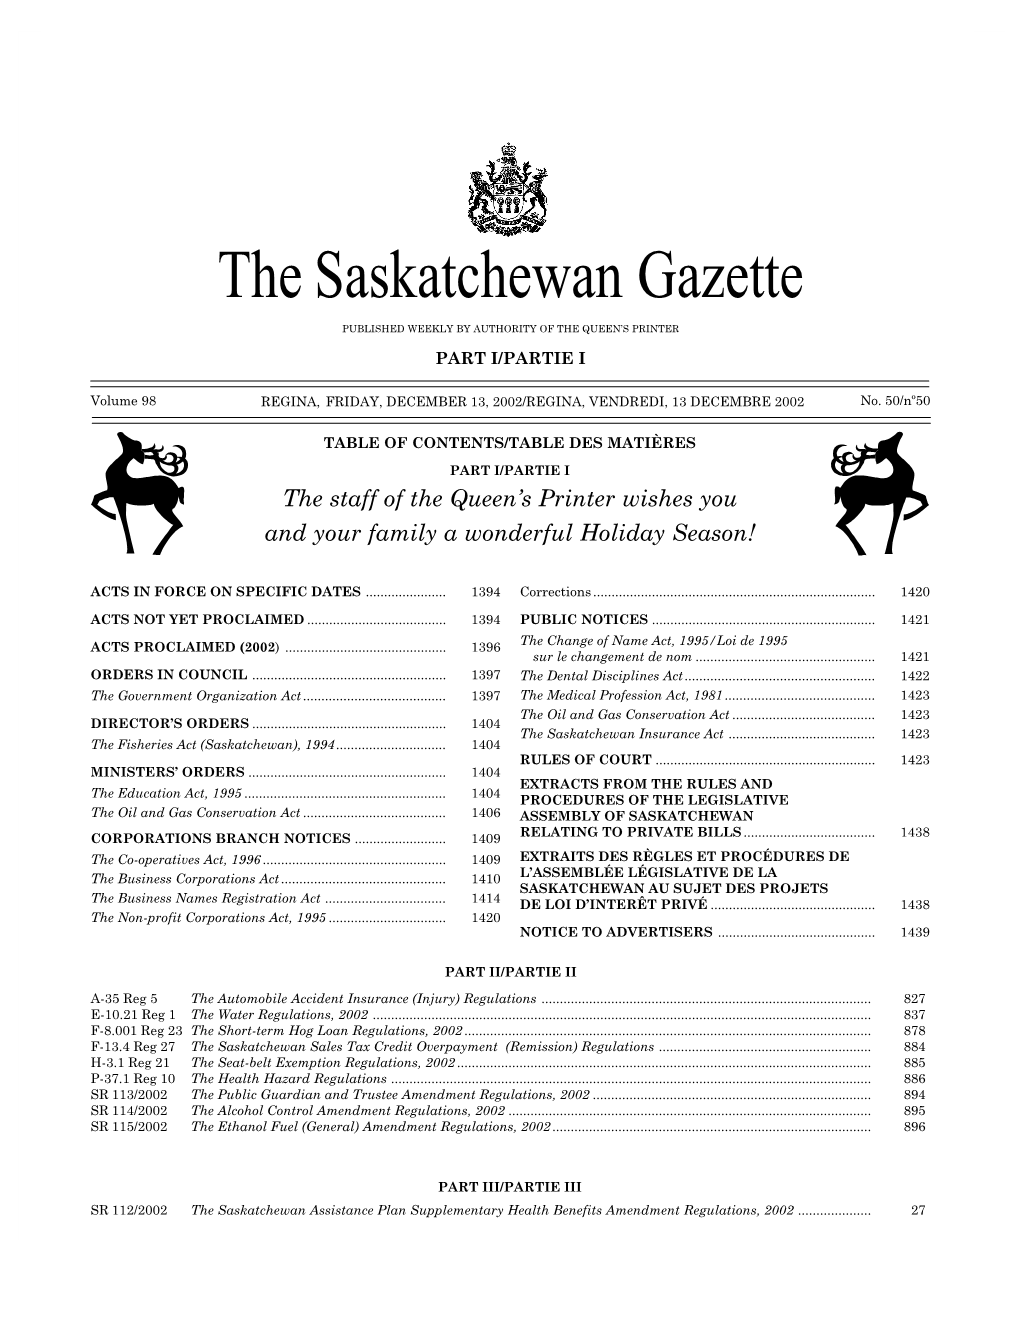 Sask Gazette, Part I, Dec13, 2002